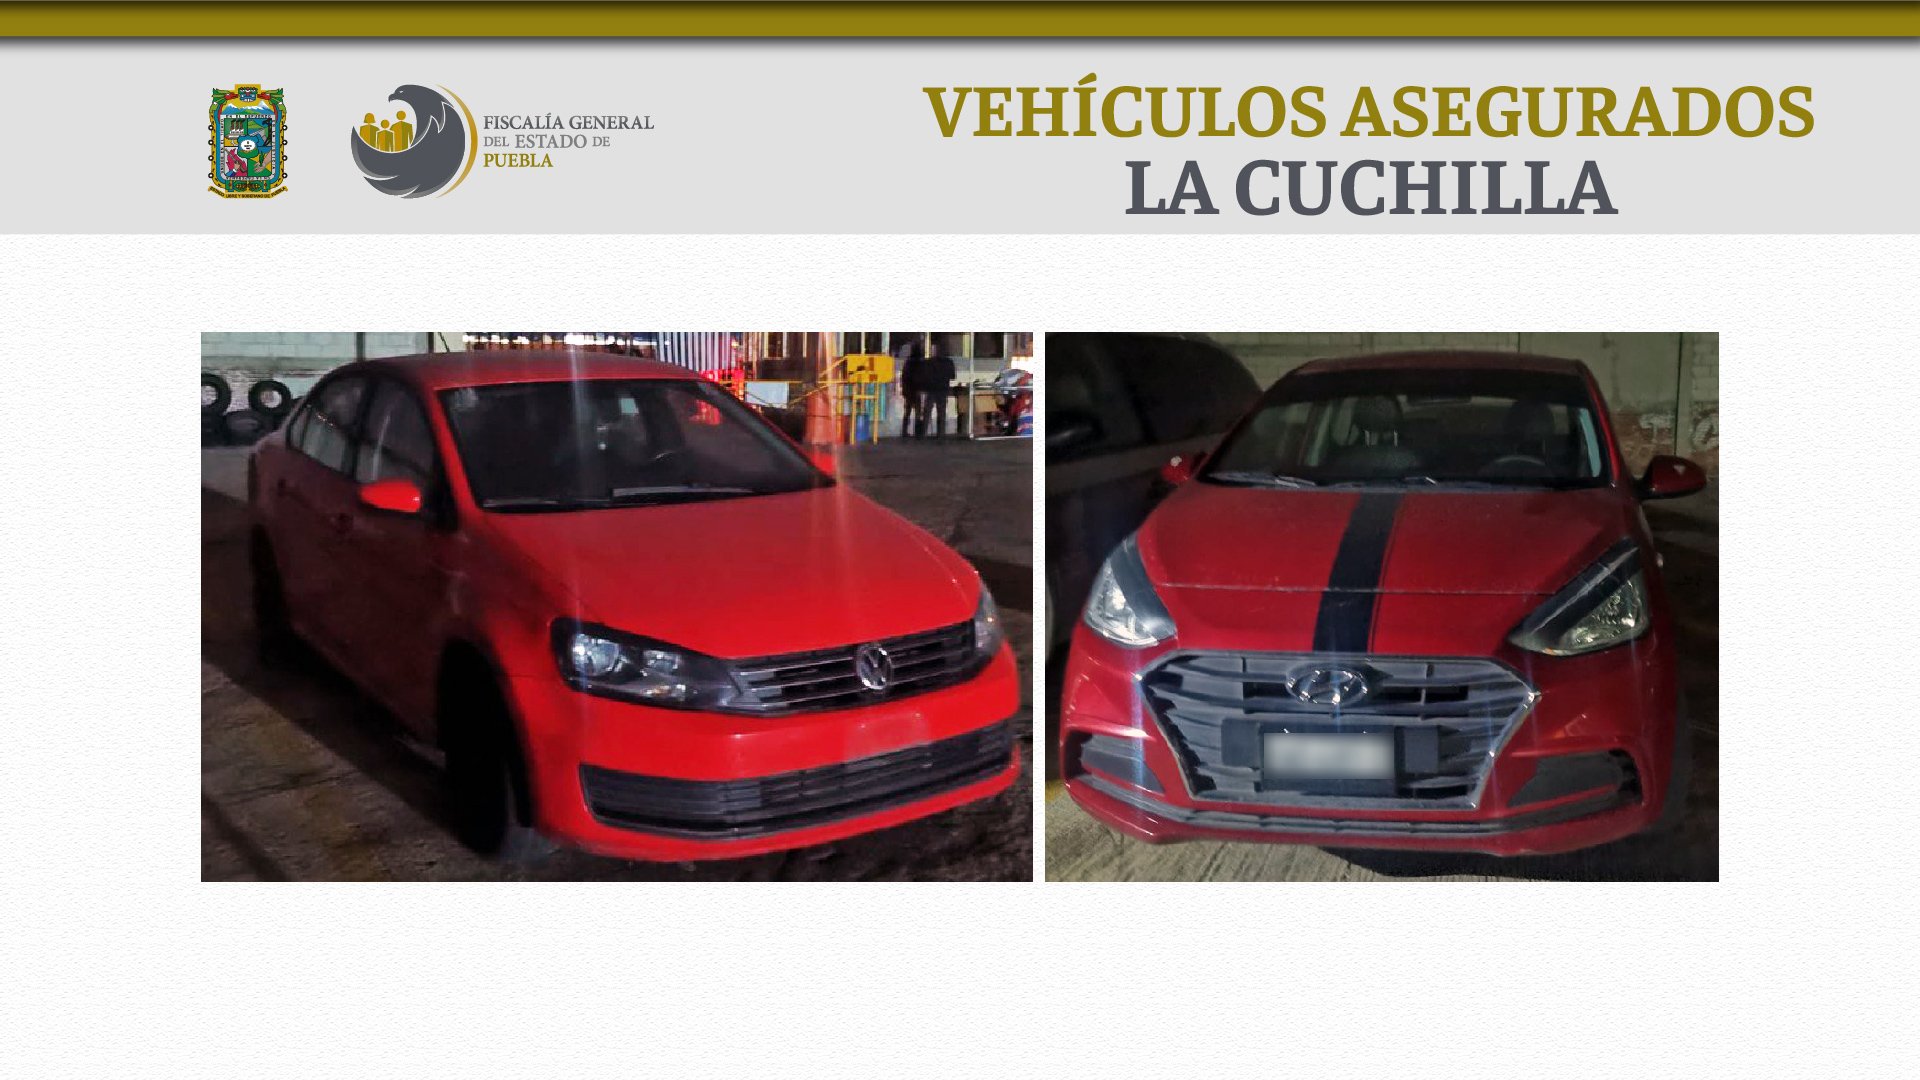 Un Hyundai i10 modelo 2020 y un Volkswagen Vento modelo 2018 fueron asegurados (Foto: Fiscalía de Puebla)